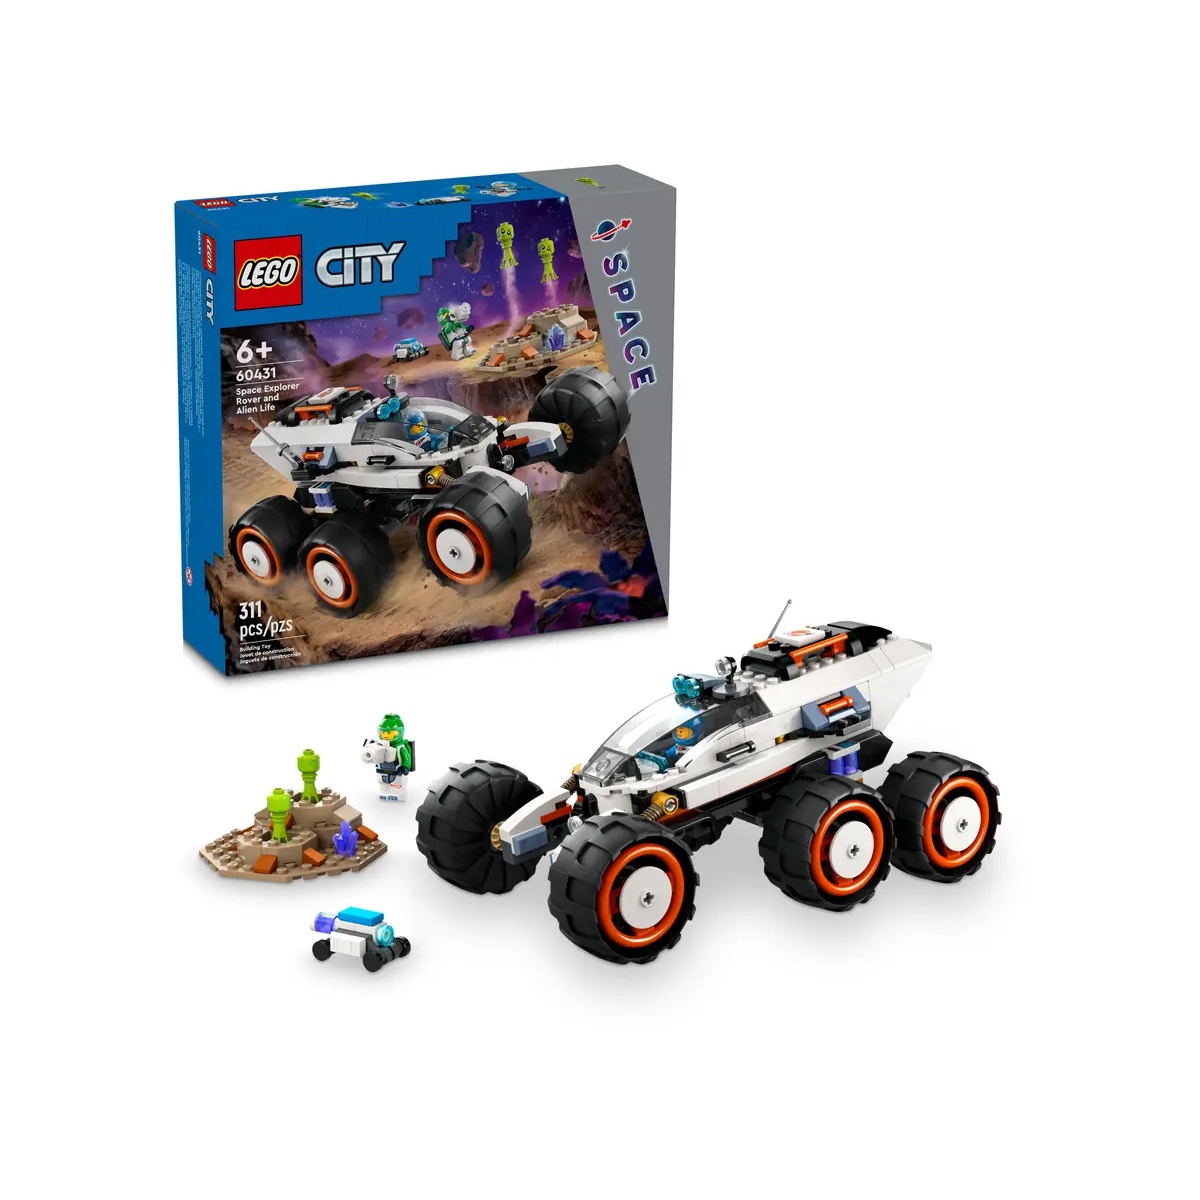 Lego City 60431 Weltraum-Rover mit Außerirdischen